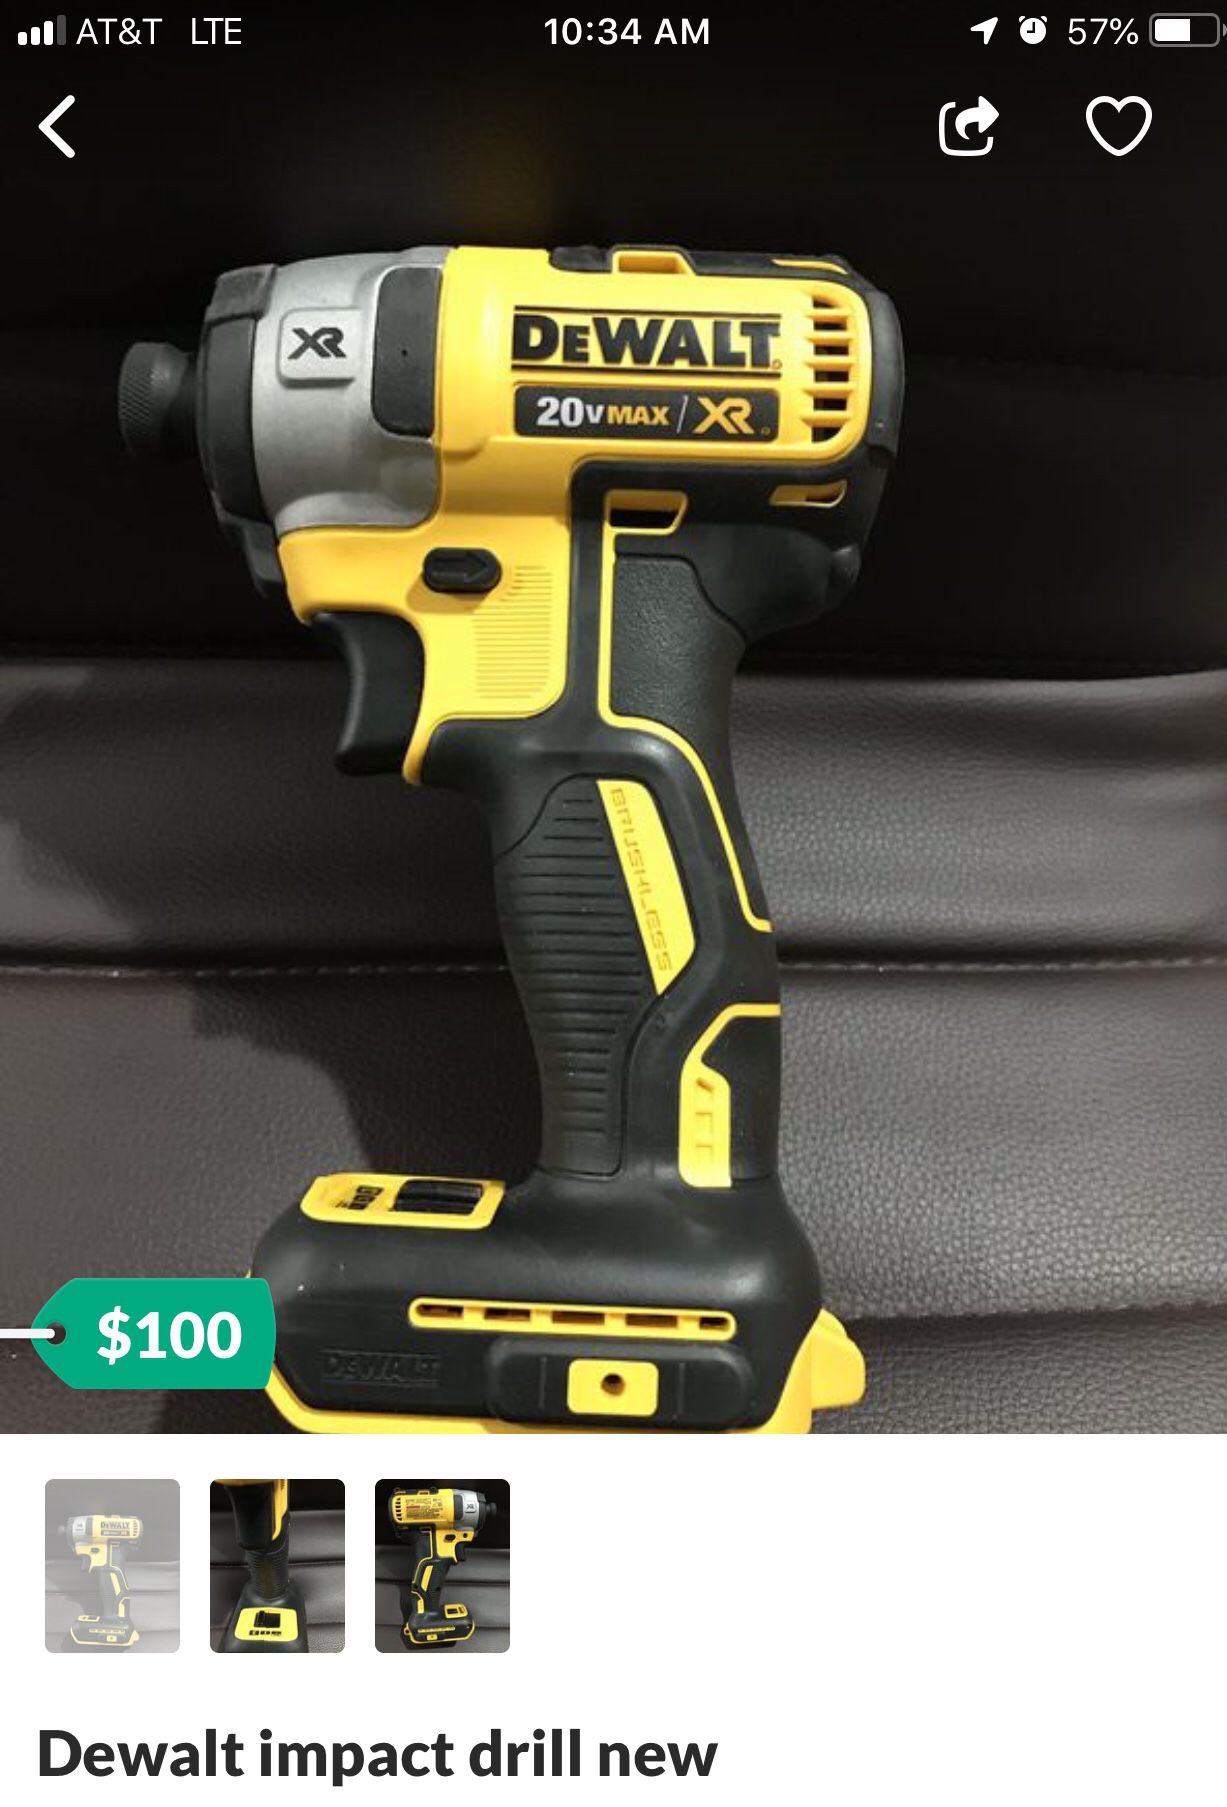 Brand new Dewalt impact drill